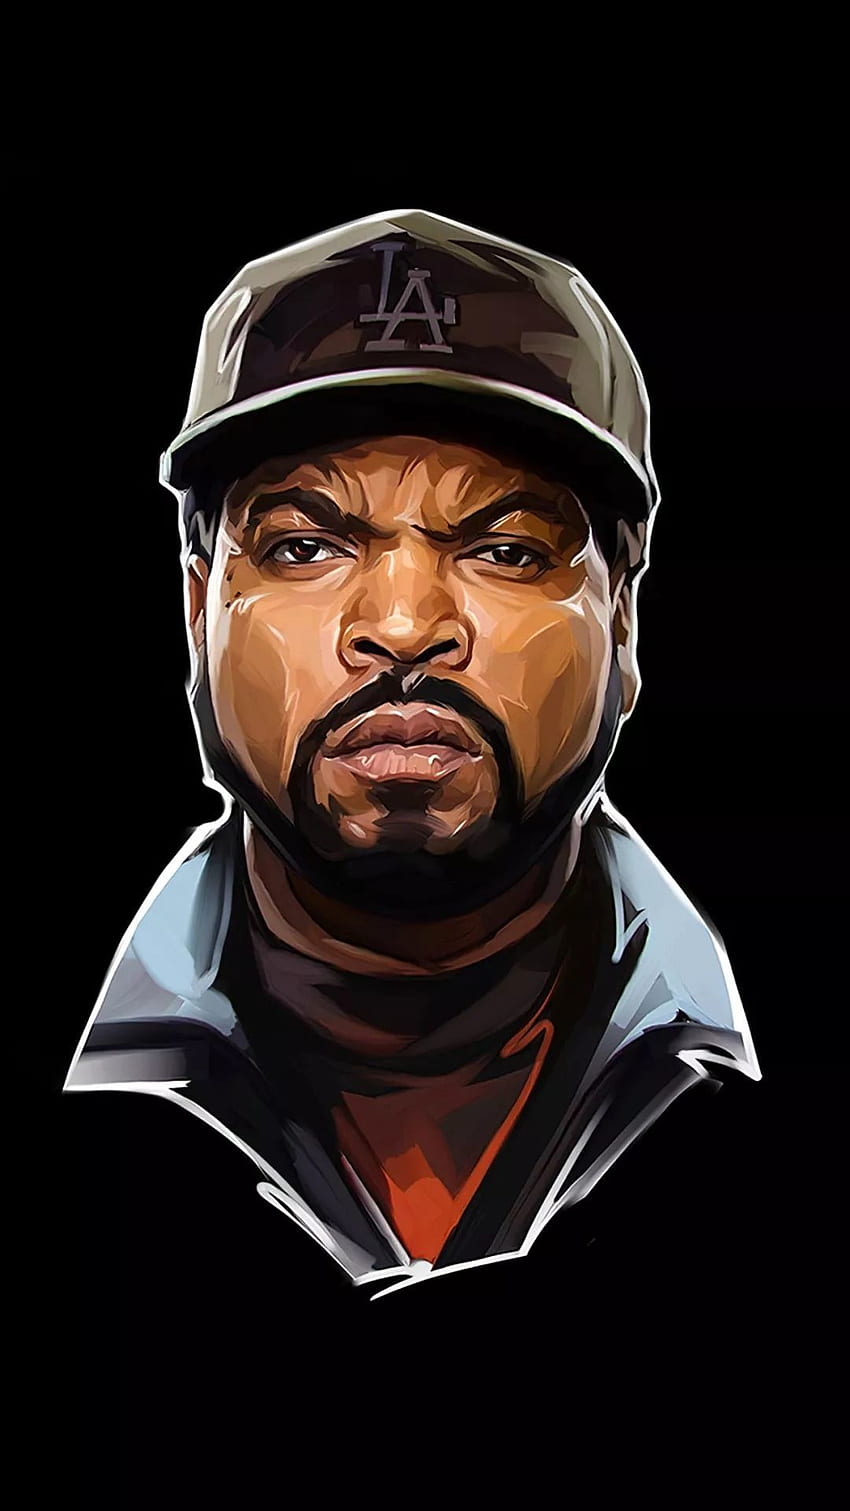 Ice Cube (mejor Ice Cube y) en Chat, Friday Ice Cube fondo de pantalla del teléfono